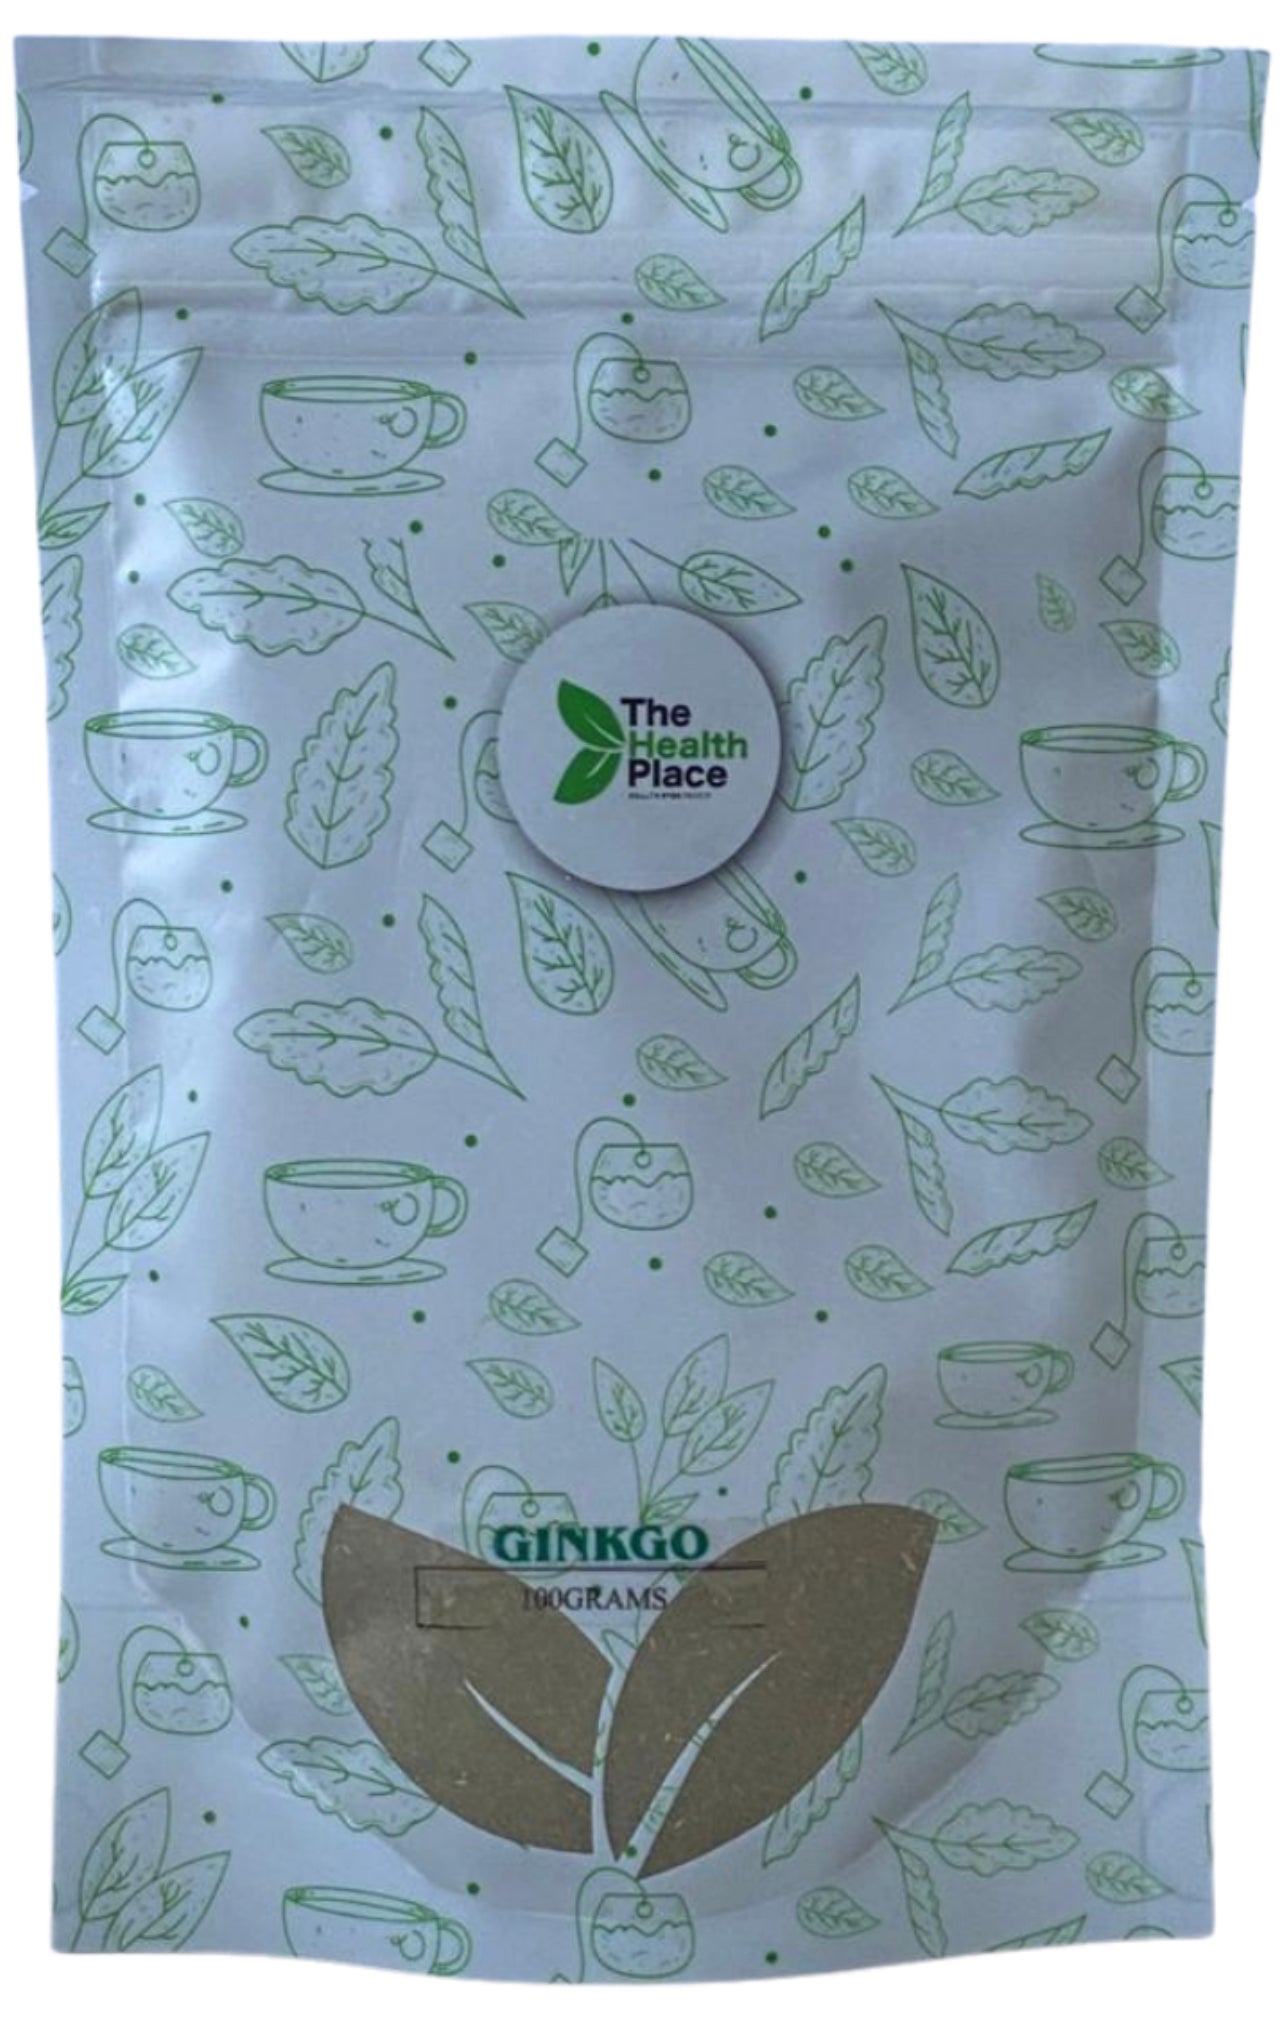 Ginkgo Leaf Organic Powder- 100 Grams